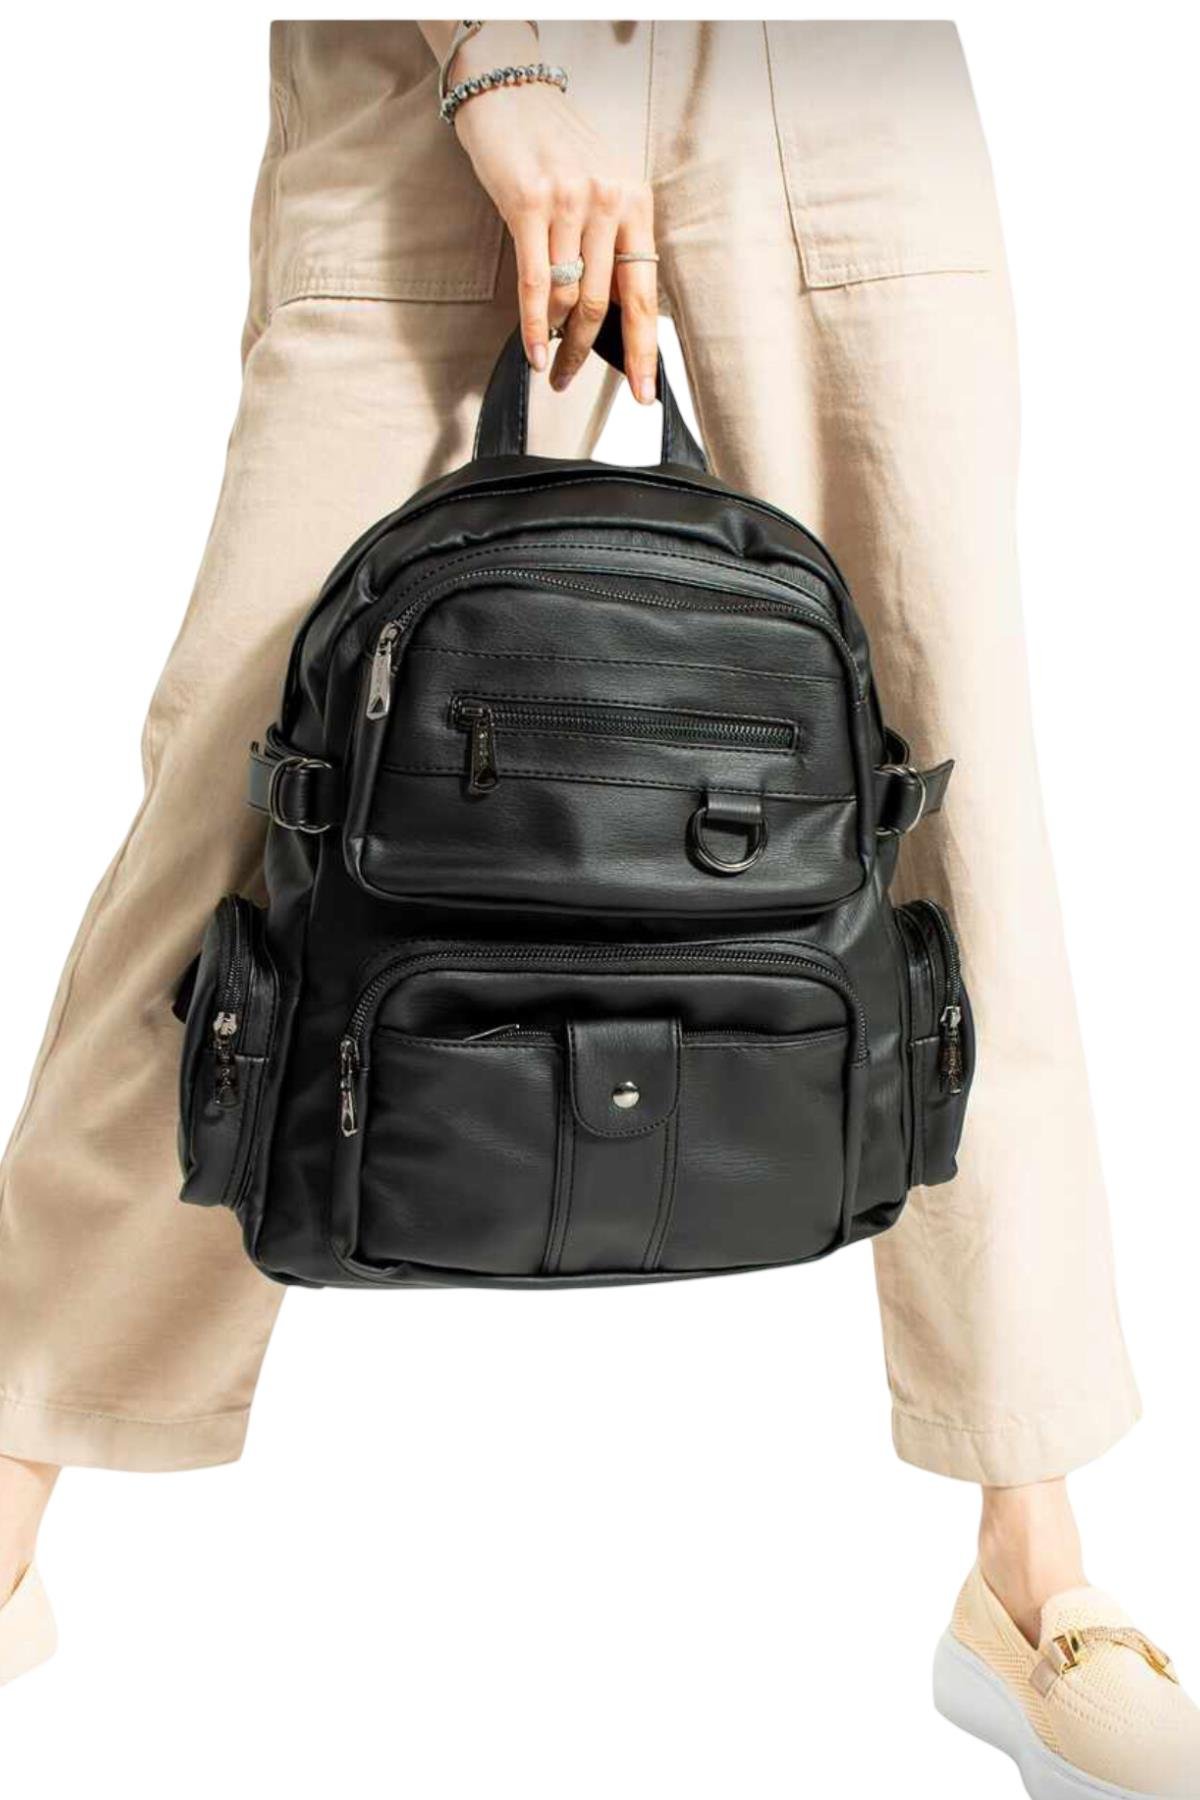 Yıkanmış yumuşak deri kadın sırt çantası mega 501 siyah |elizabell.com.tr